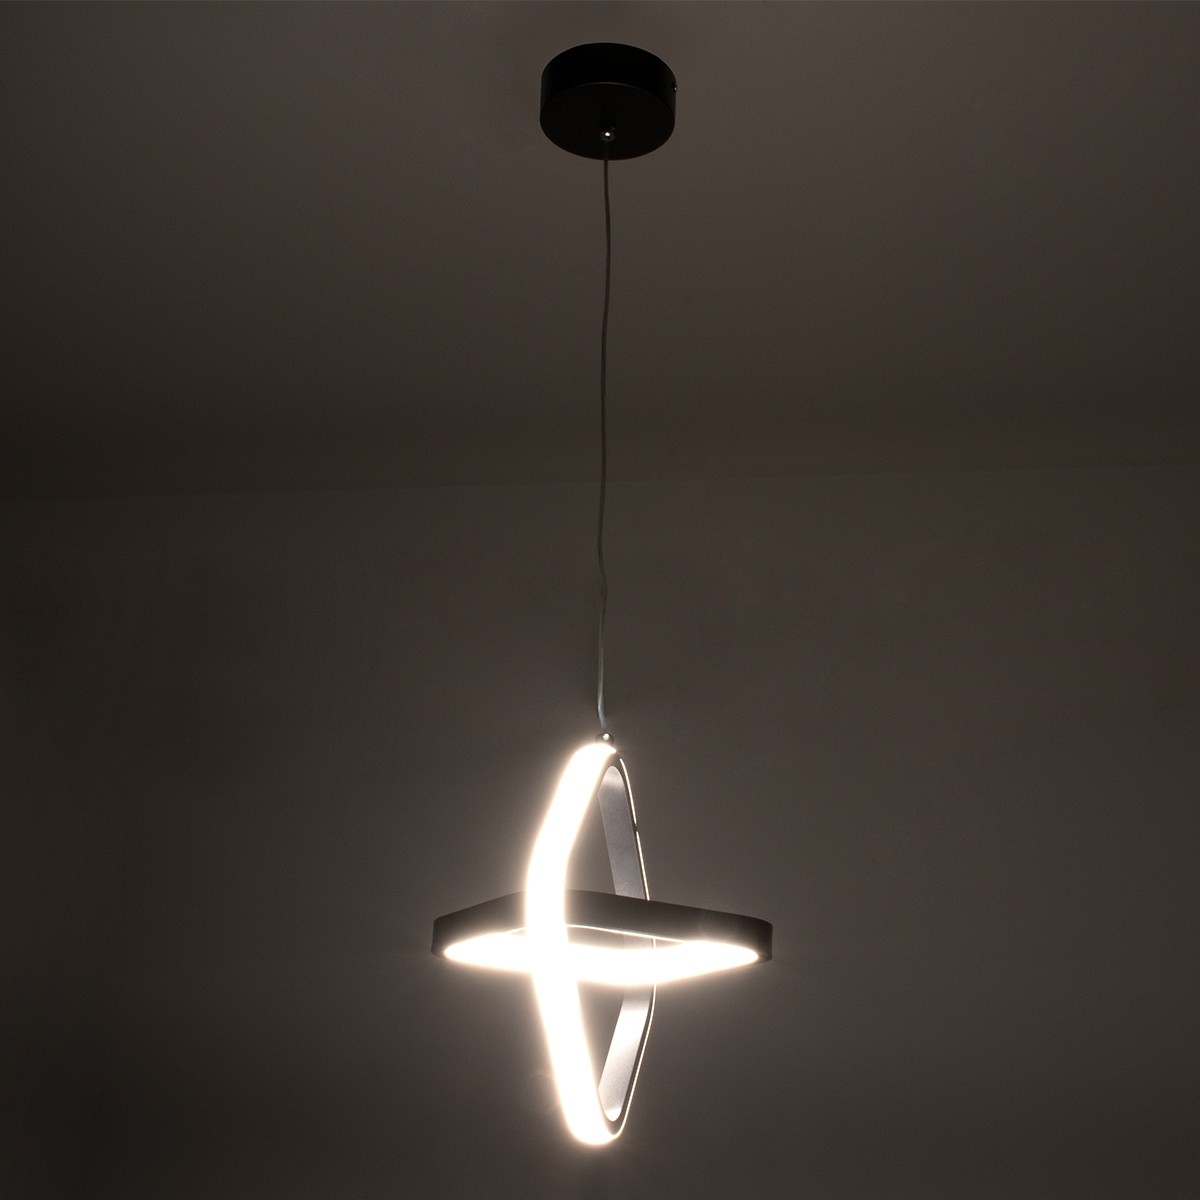 LED Κρεμαστό Φωτιστικό Οροφής Λευκό Design ROSE 22W Εναλλαγή Φωτισμού μέσω Διακόπτη On/Off Μ24 x Π22 x Υ24cm 61065